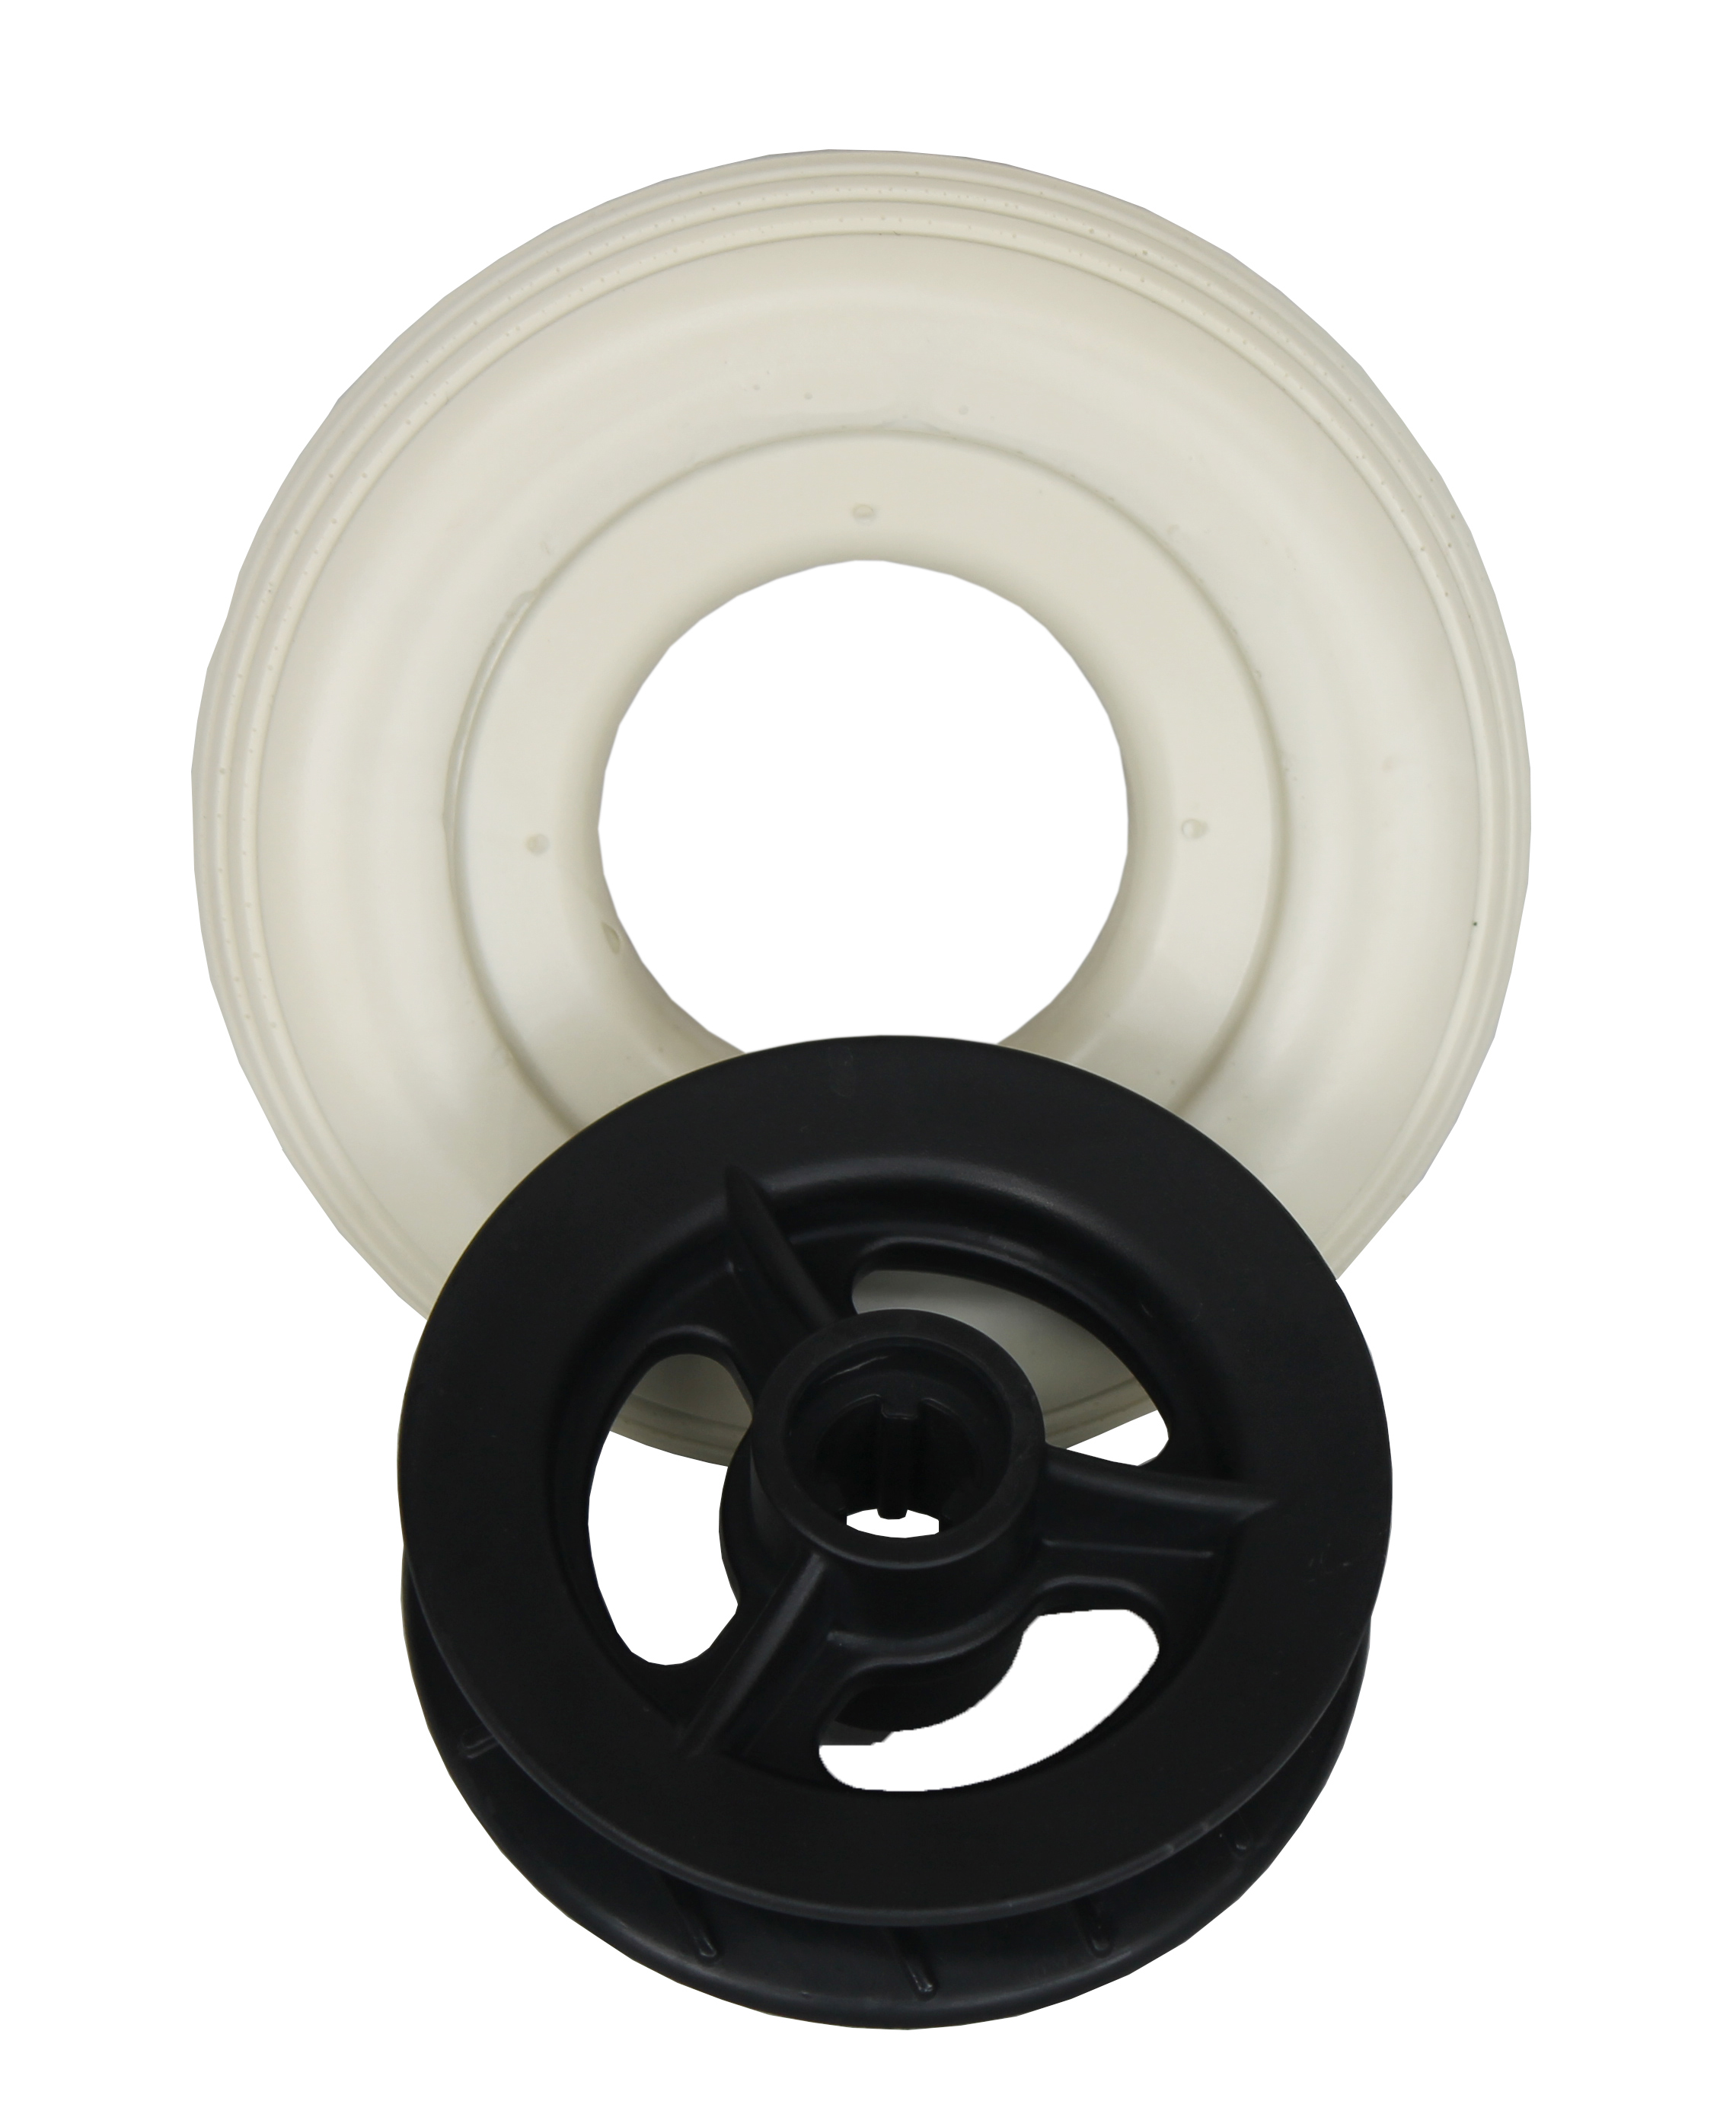 Pneus de poliuretano pneus para venda rodas personalizadas de espuma pneus cheios pneus sólidos